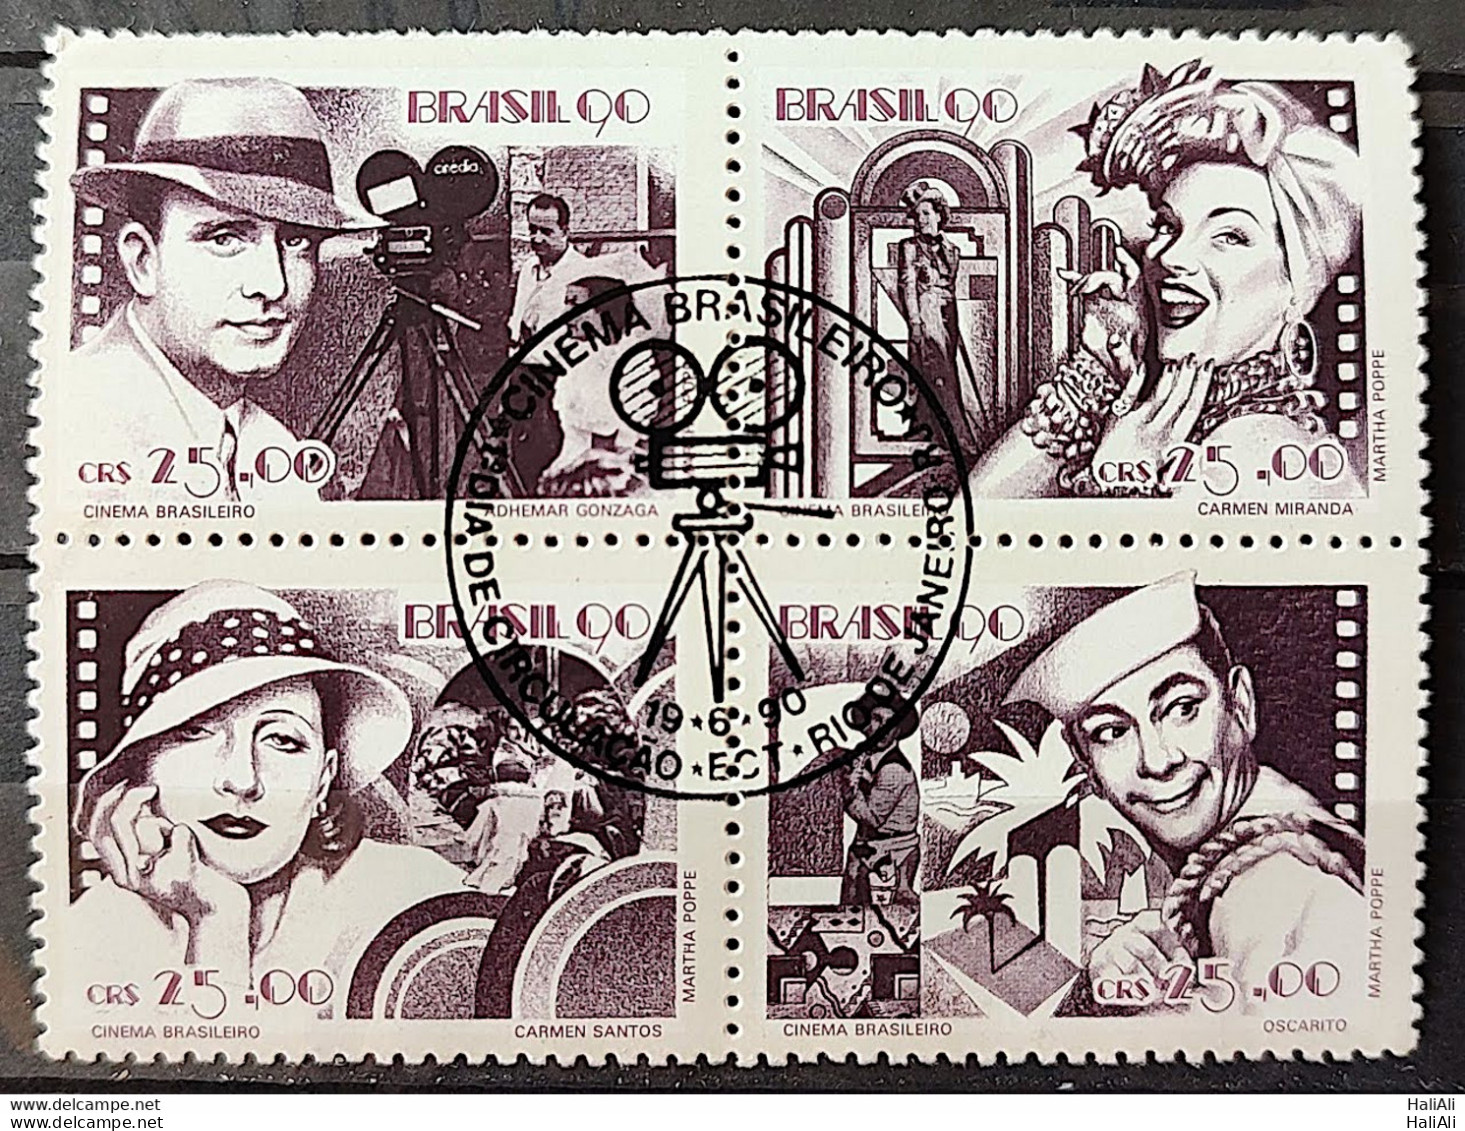 C 1687 Brazil Stamp Brazilian Cinema Gonzaga Carmen Miranda Occarito 1990 Complete Series CBC RJ - Nuevos